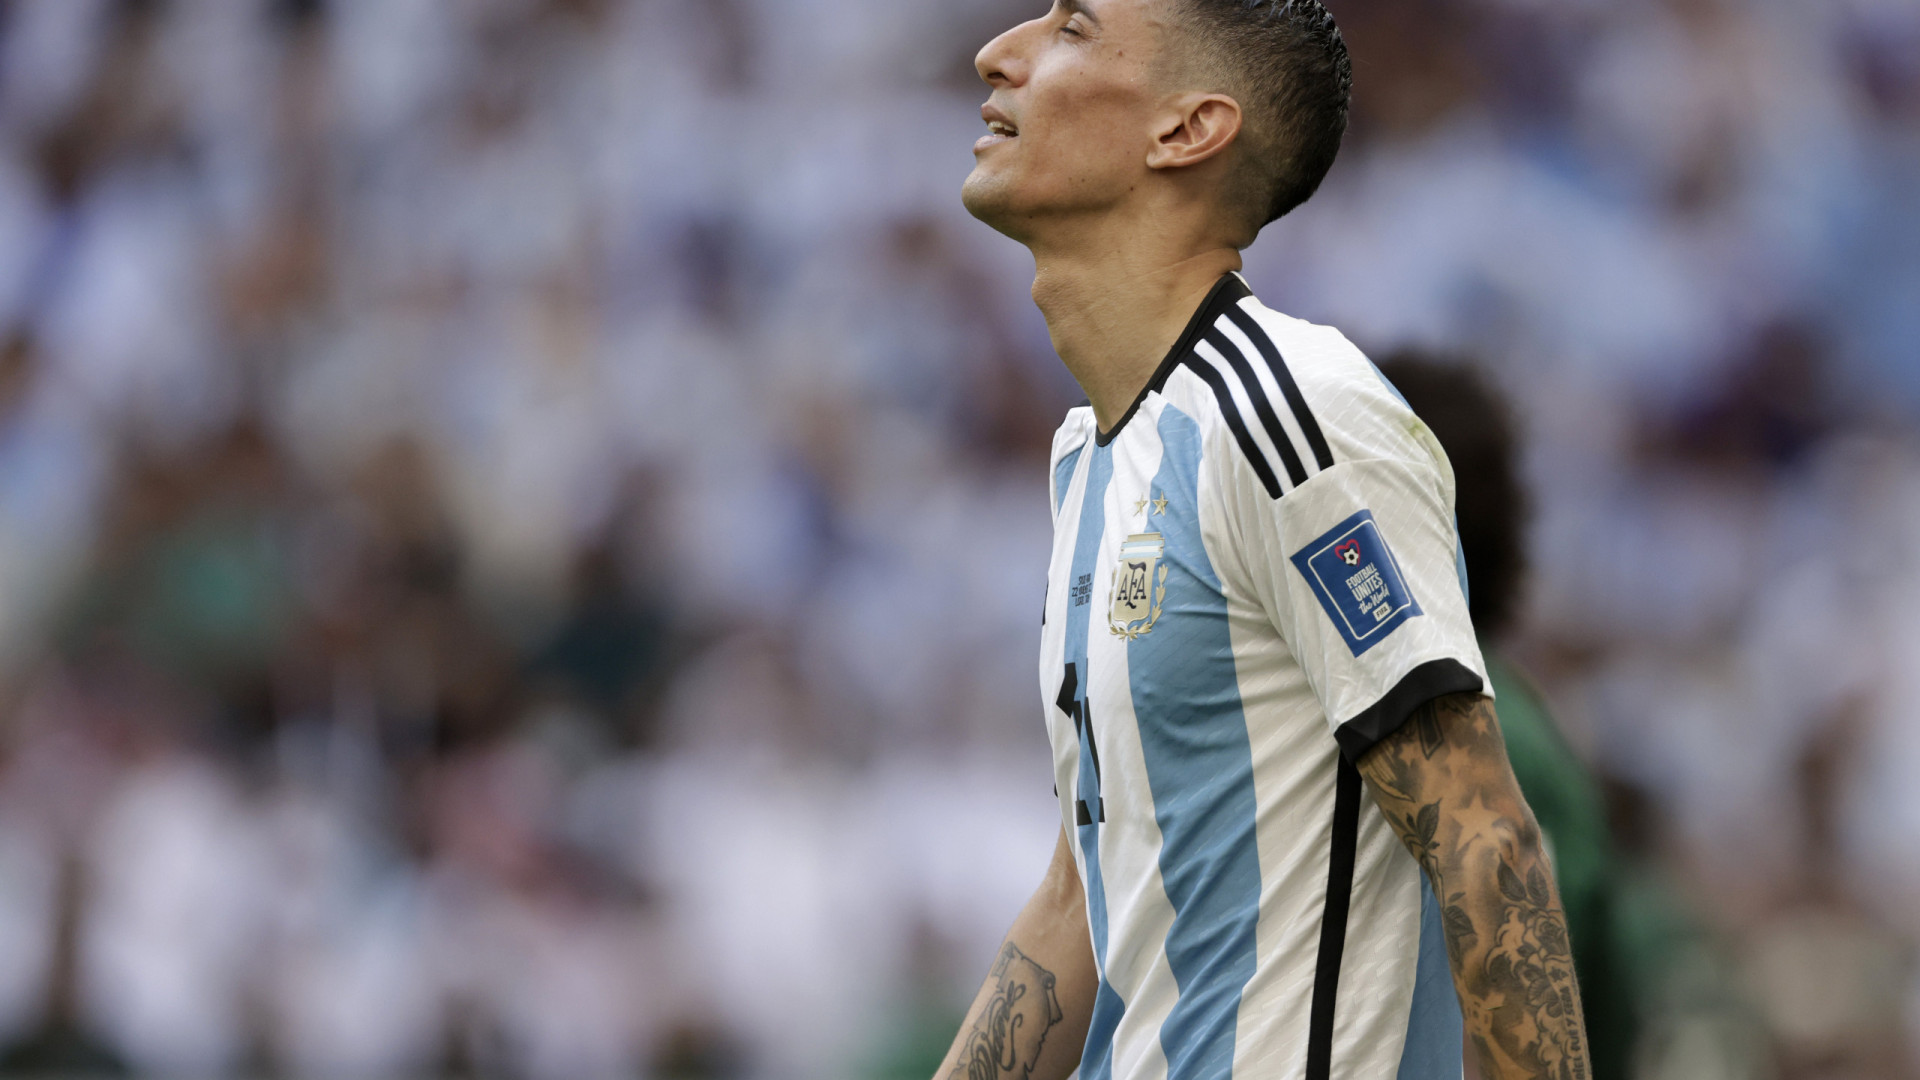 'Podíamos ter vencido por 5 a 0', diz Di María sobre derrota argentina